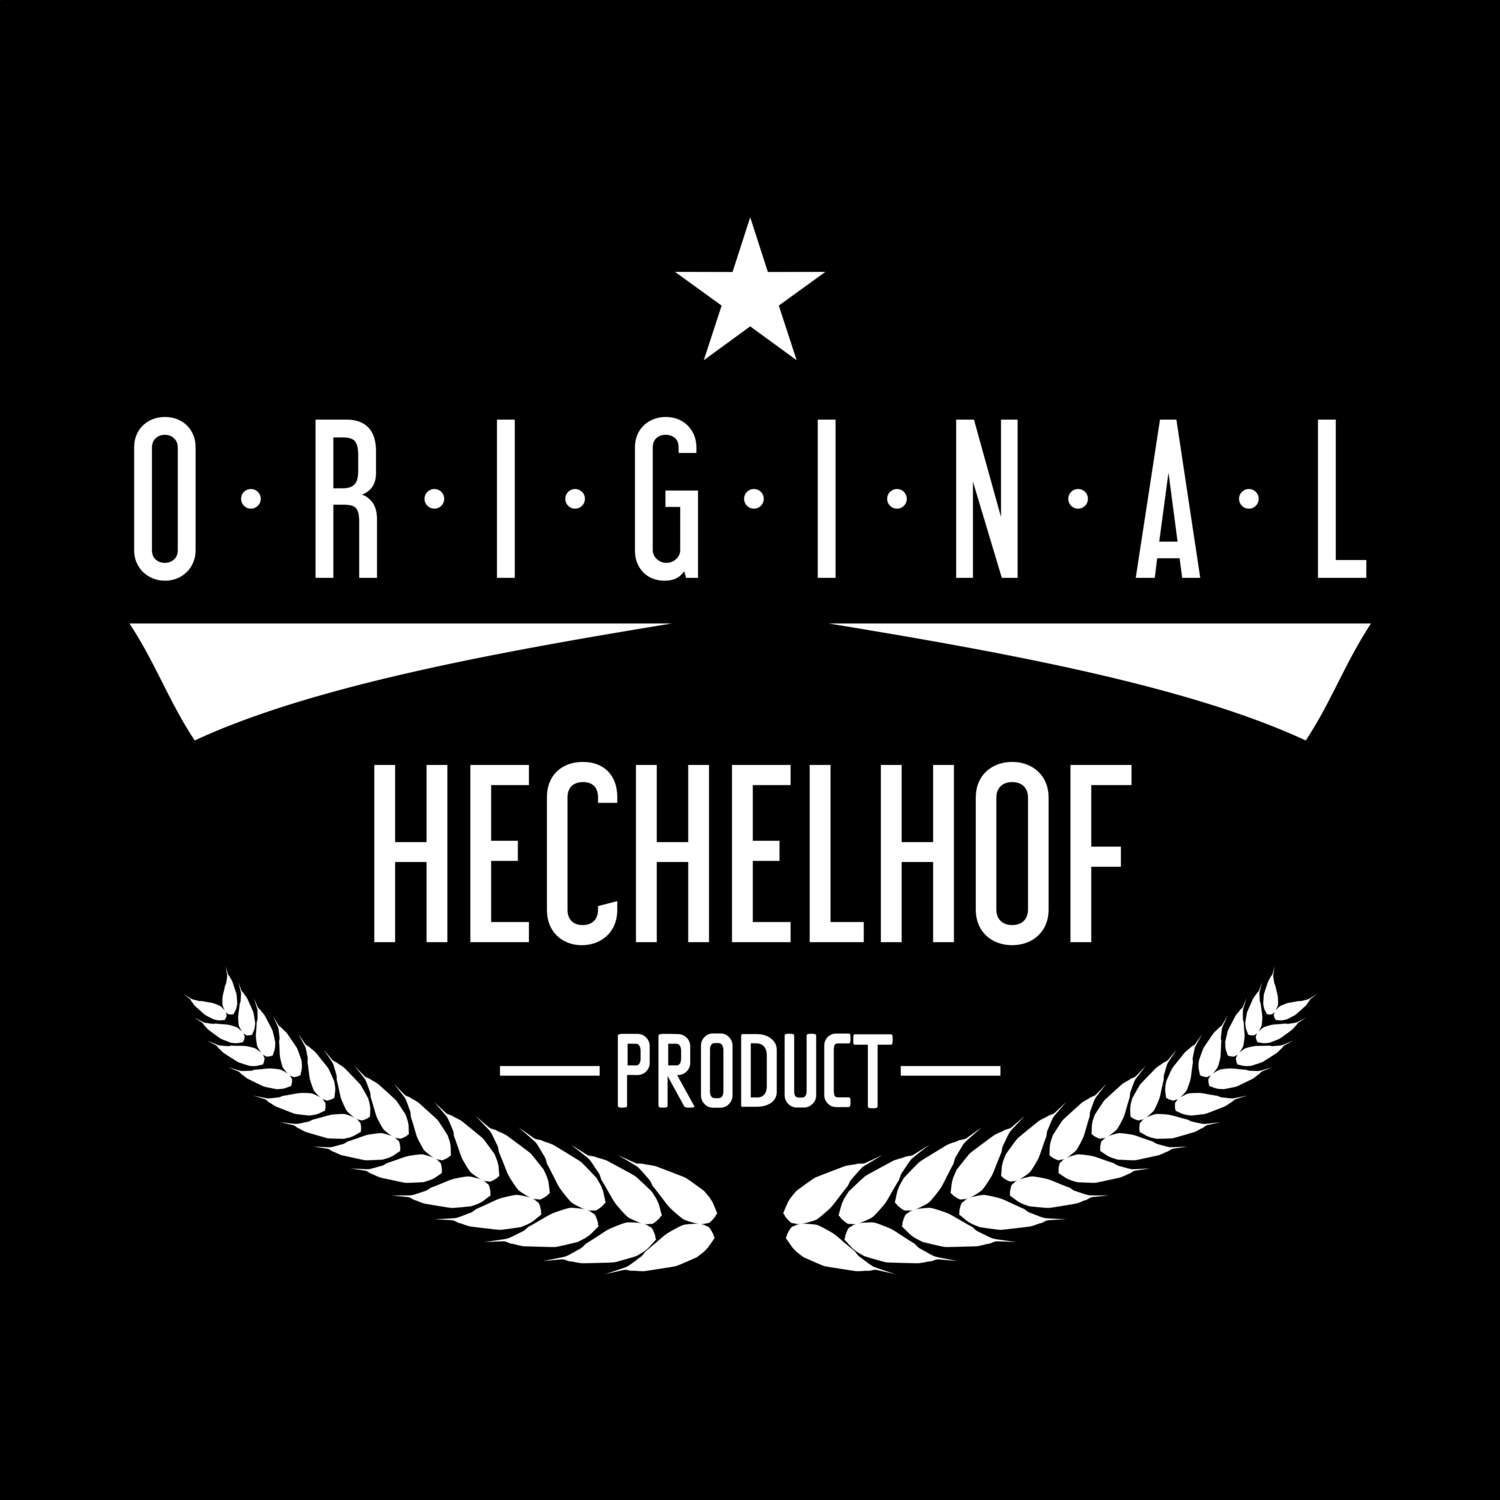 Hechelhof T-Shirt »Original Product«